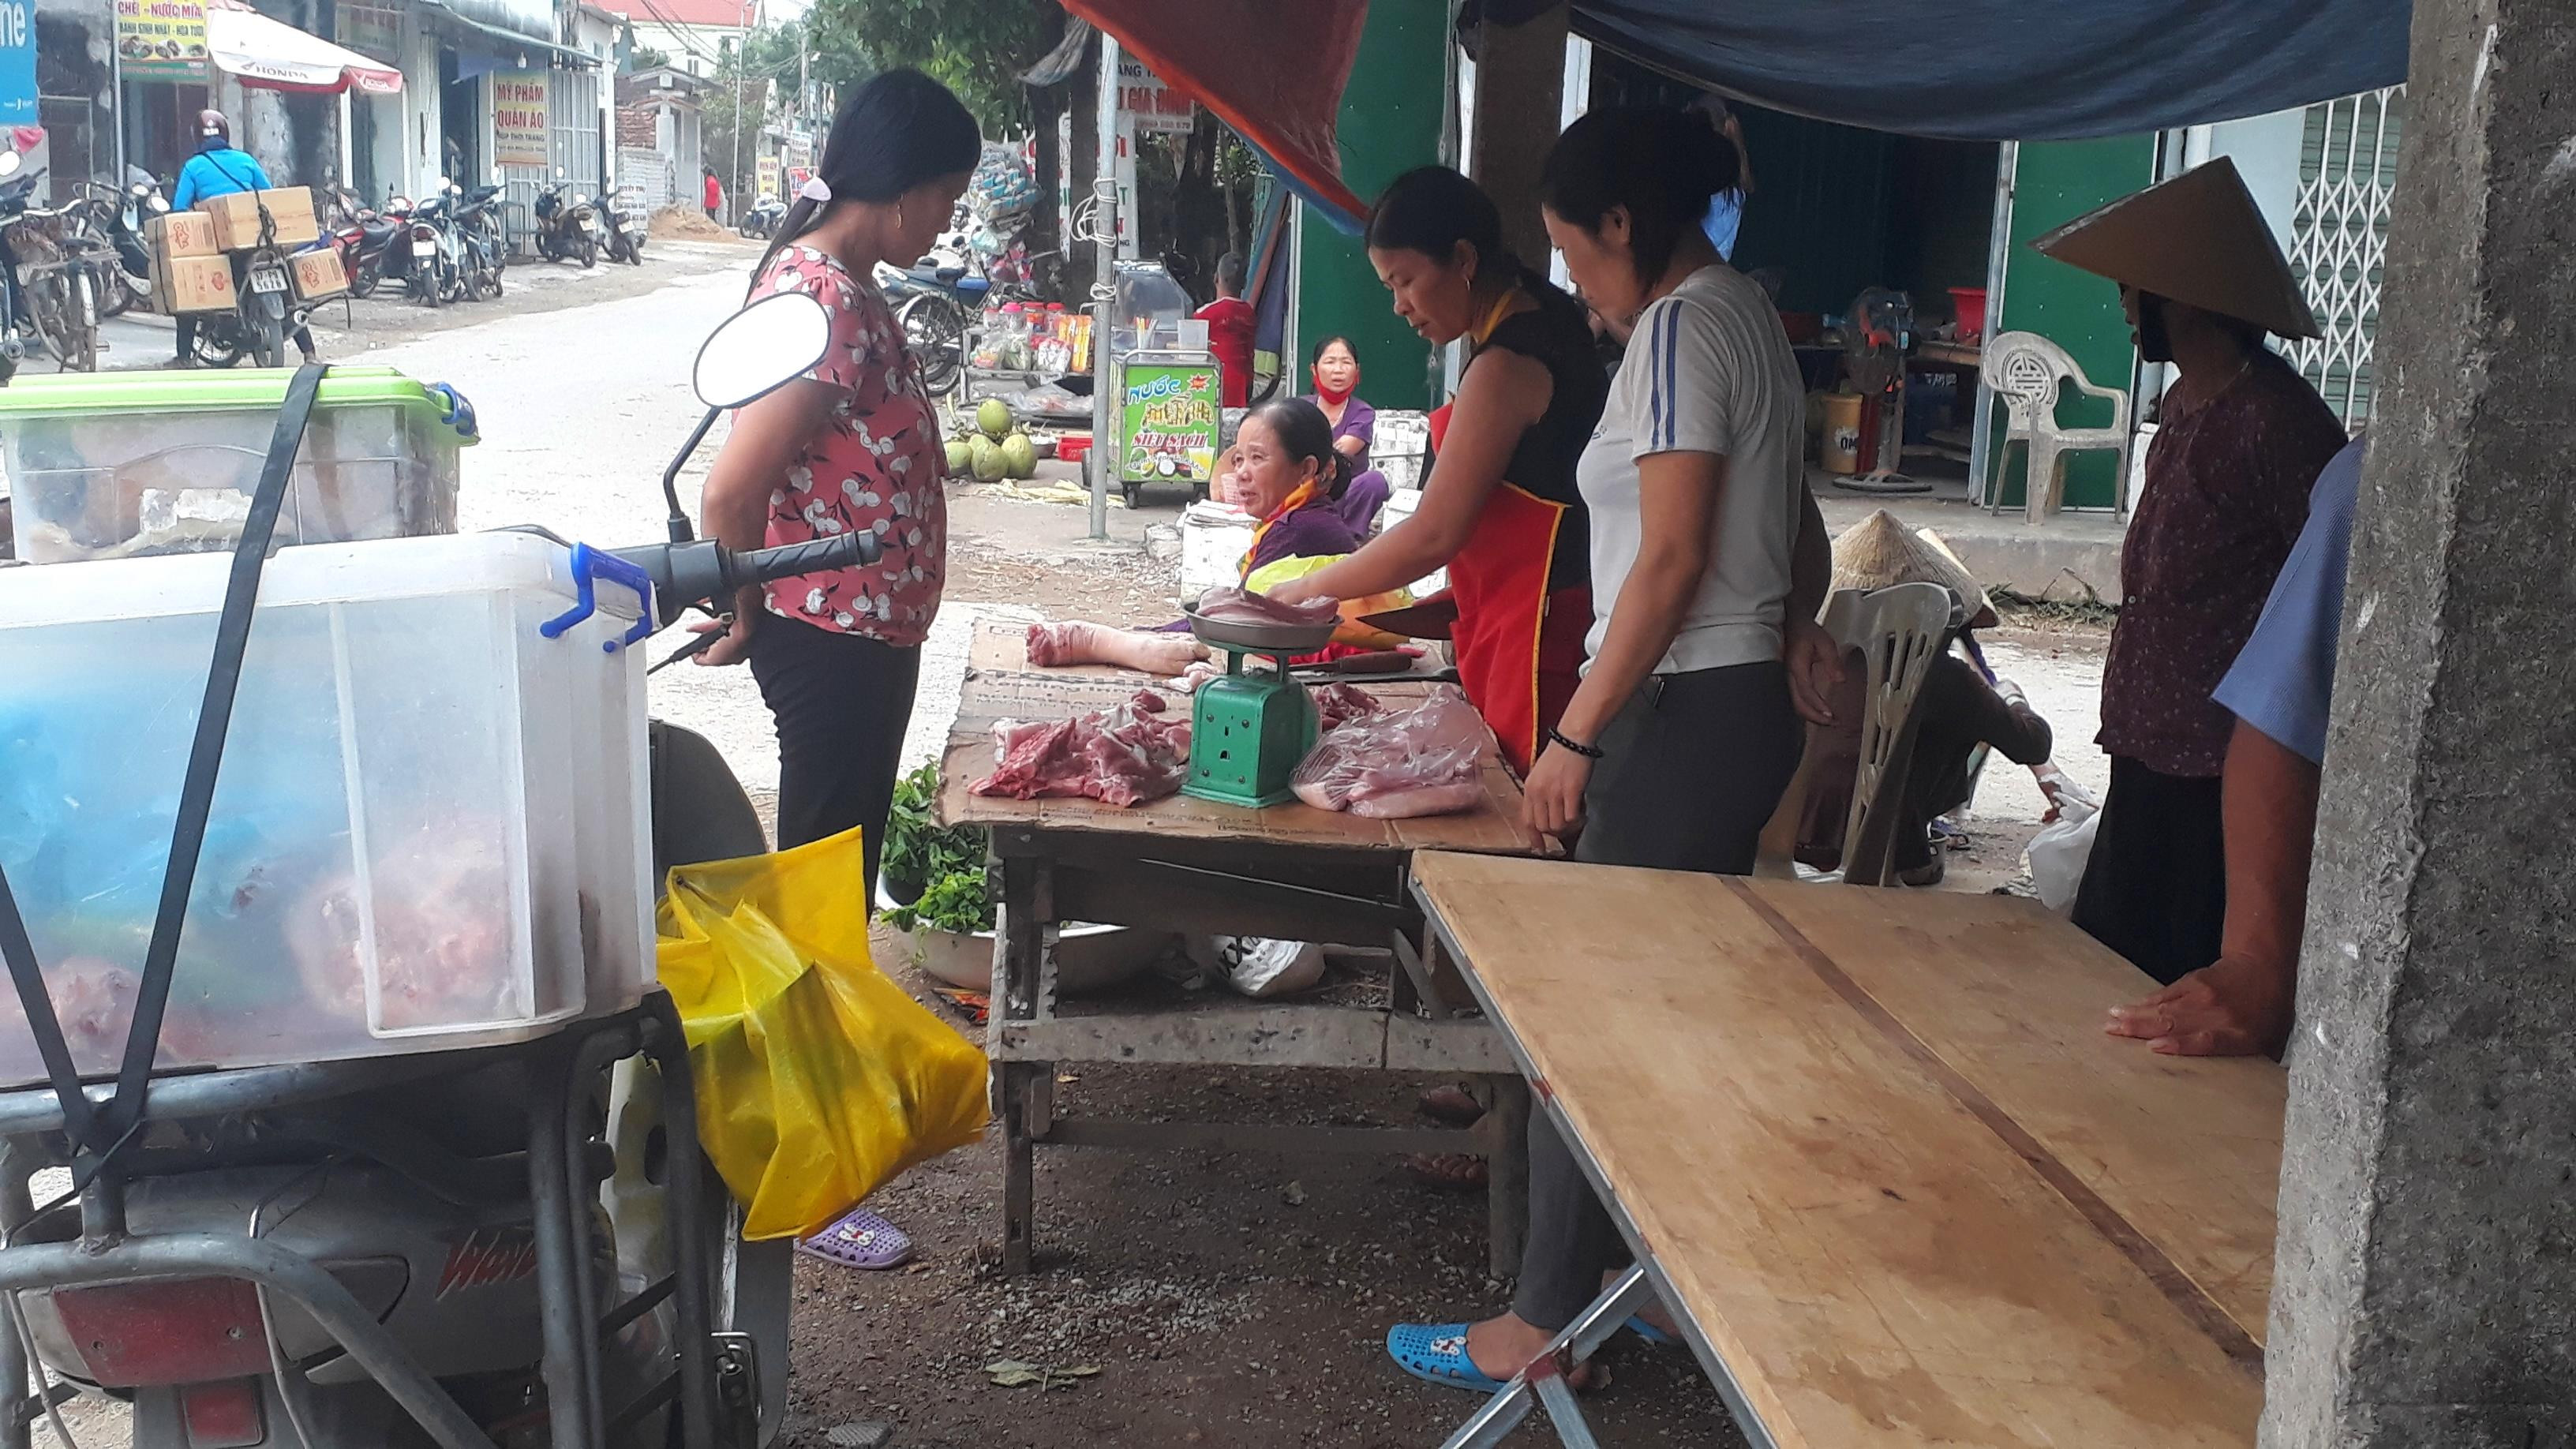  Các điểm bán thịt lợn tập trung ở chợ ngã tư thuộc địa bàn xóm 9 và 15. Ảnh: chụp chiều ngày 9/5.  Ảnh: Việt Hùng